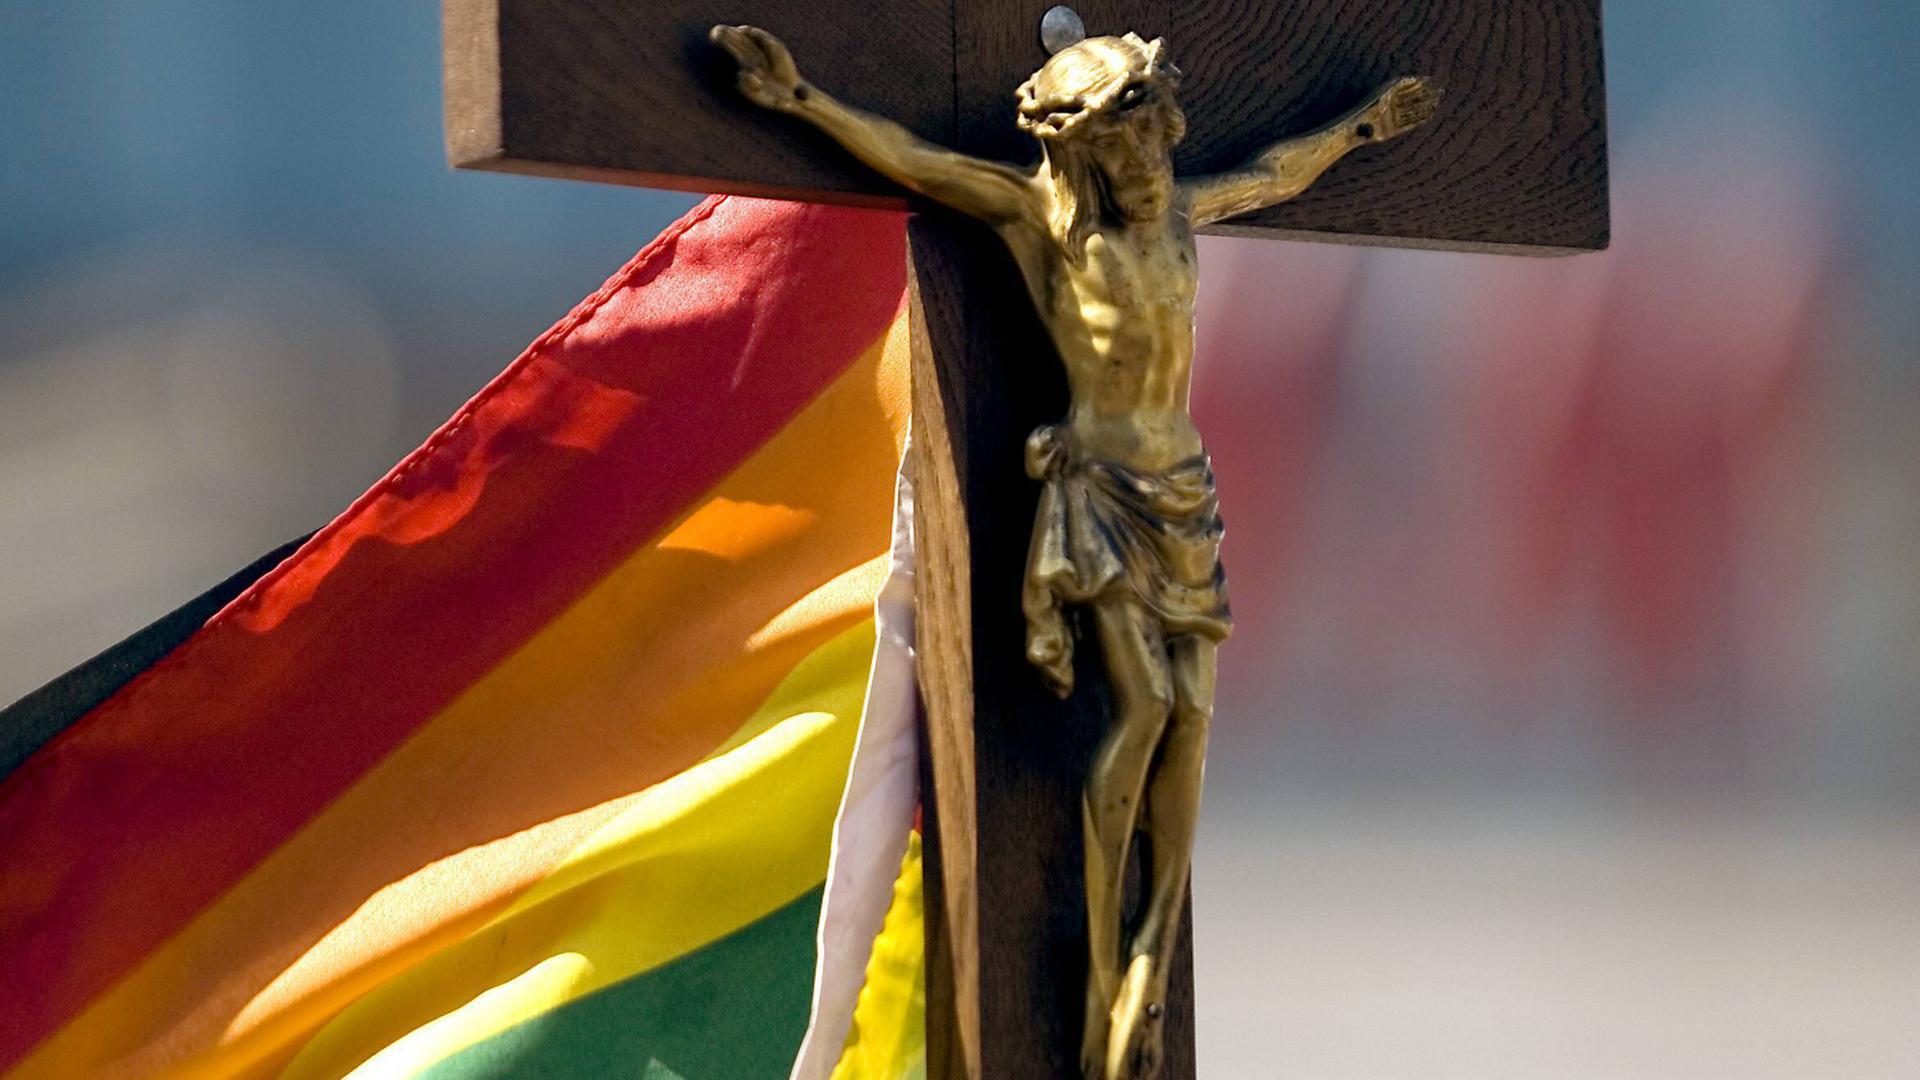 Das Bild zeigt eine Regenbogenflagge an einem Kruzifix.